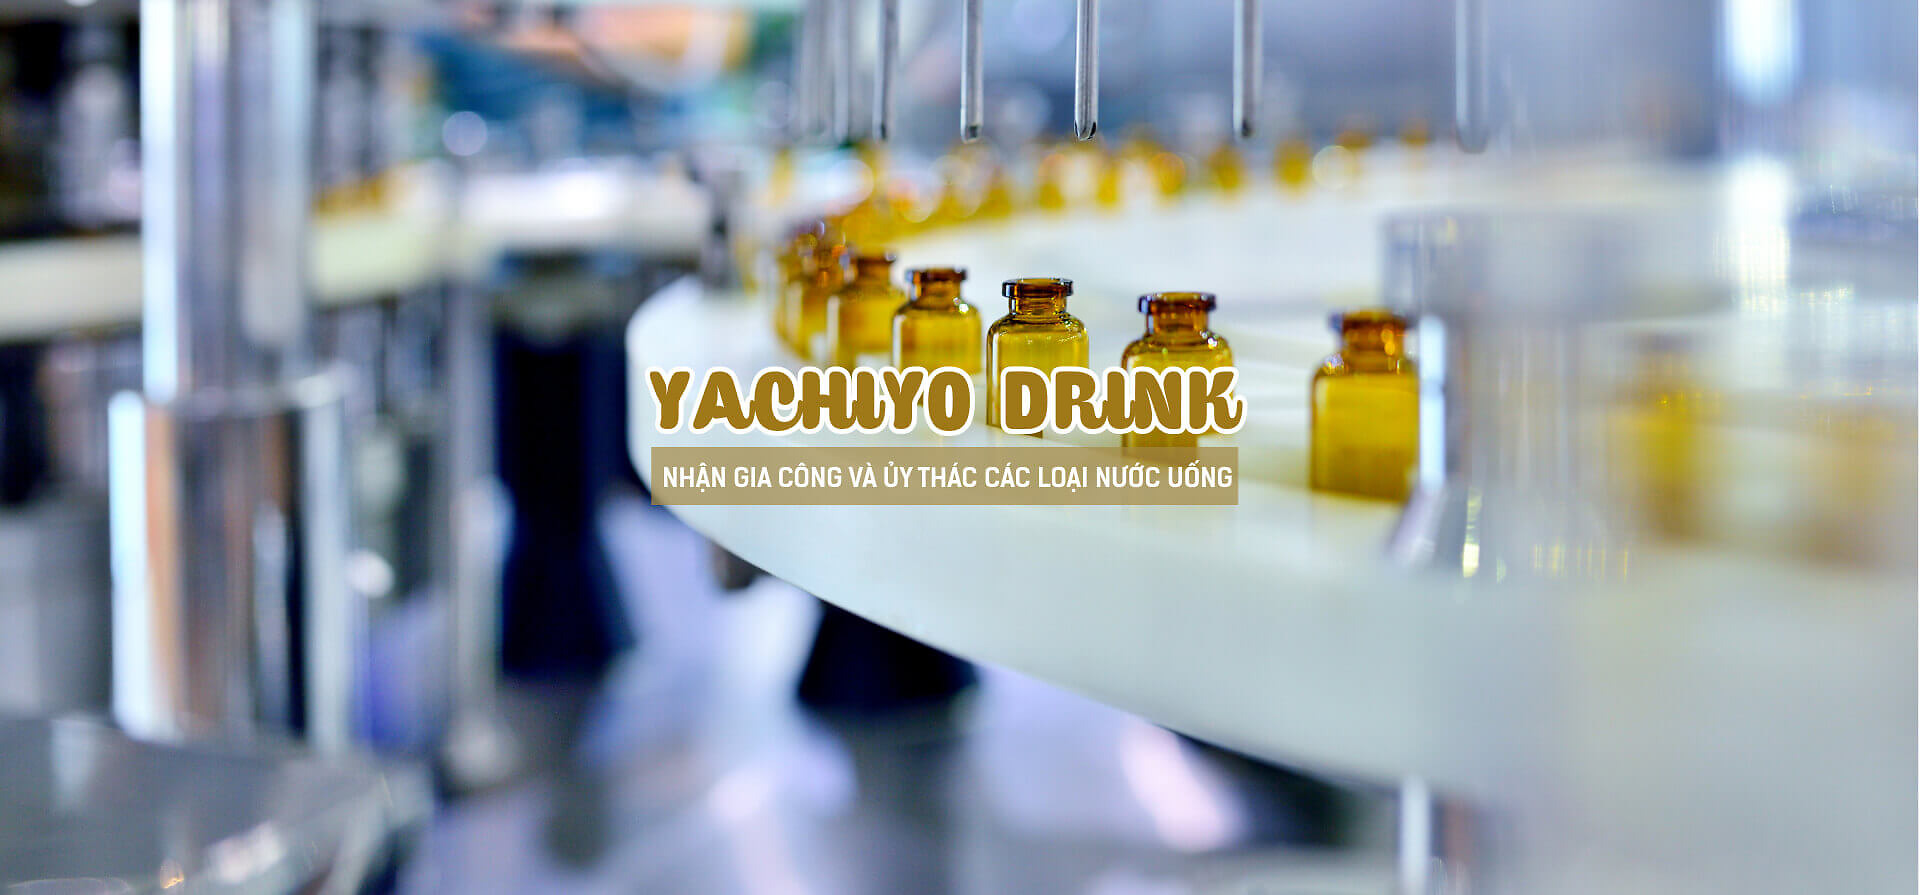 YACHIYO DRINK